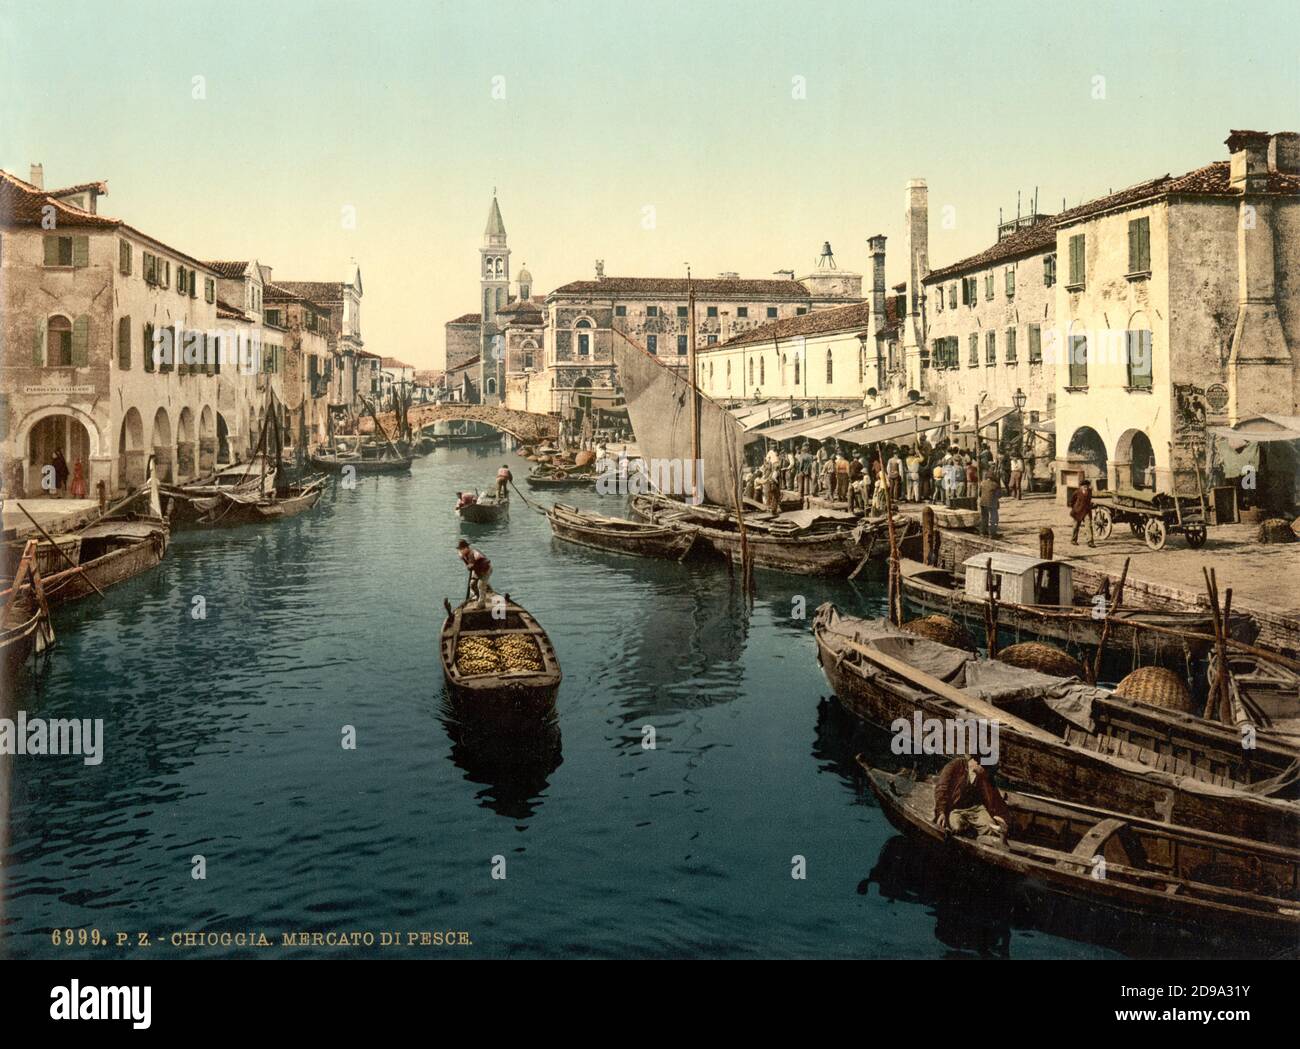 1895 ca. , CHIOGGIA , VENEZIA ,  ITALY : The  Mercato del Pesce  . Photocrom print colors edited by Detroit Publishing Co.  -  VENICE - VENETO -  ITALIA - FOTO STORICHE - HISTORY - GEOGRAFIA - GEOGRAPHY  - ARCHITETTURA - ARCHITECTURE  -     - ARTS - ARTE - canale   ----  Archivio GBB Stock Photo